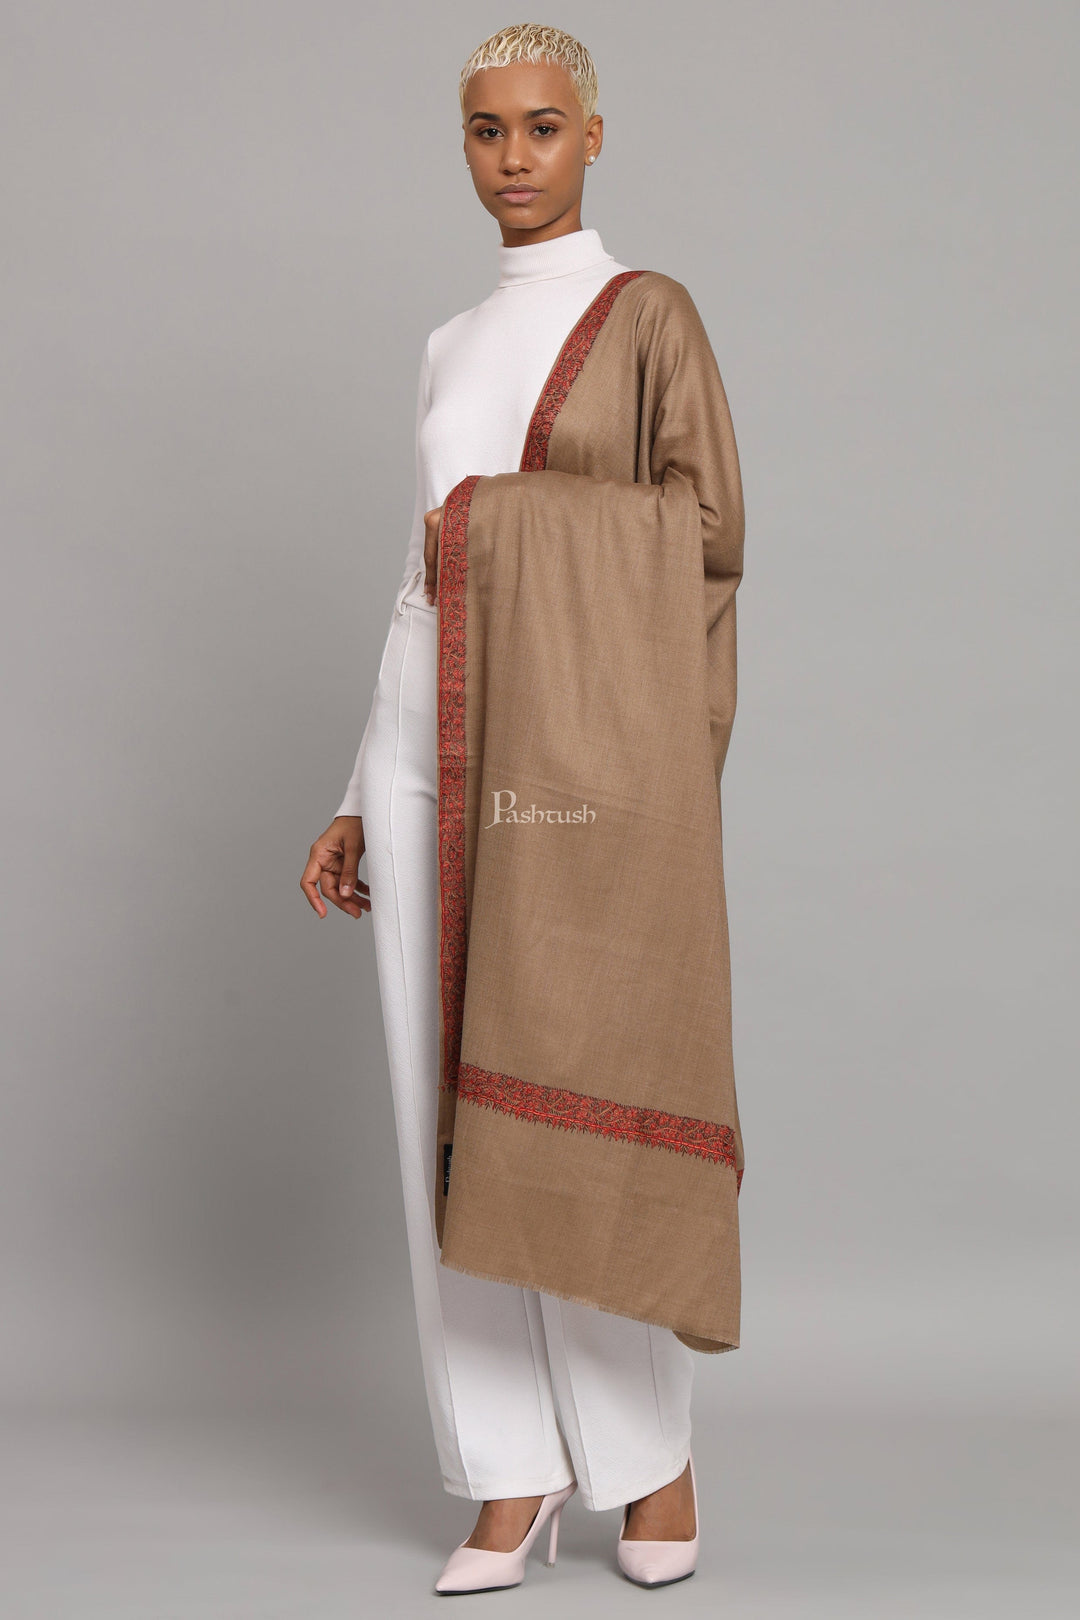 Pashtush India Womens Shawls Pashtush Womens Fine Wool Shawl, Hand Embroidered Neemdaur Design, Taupe